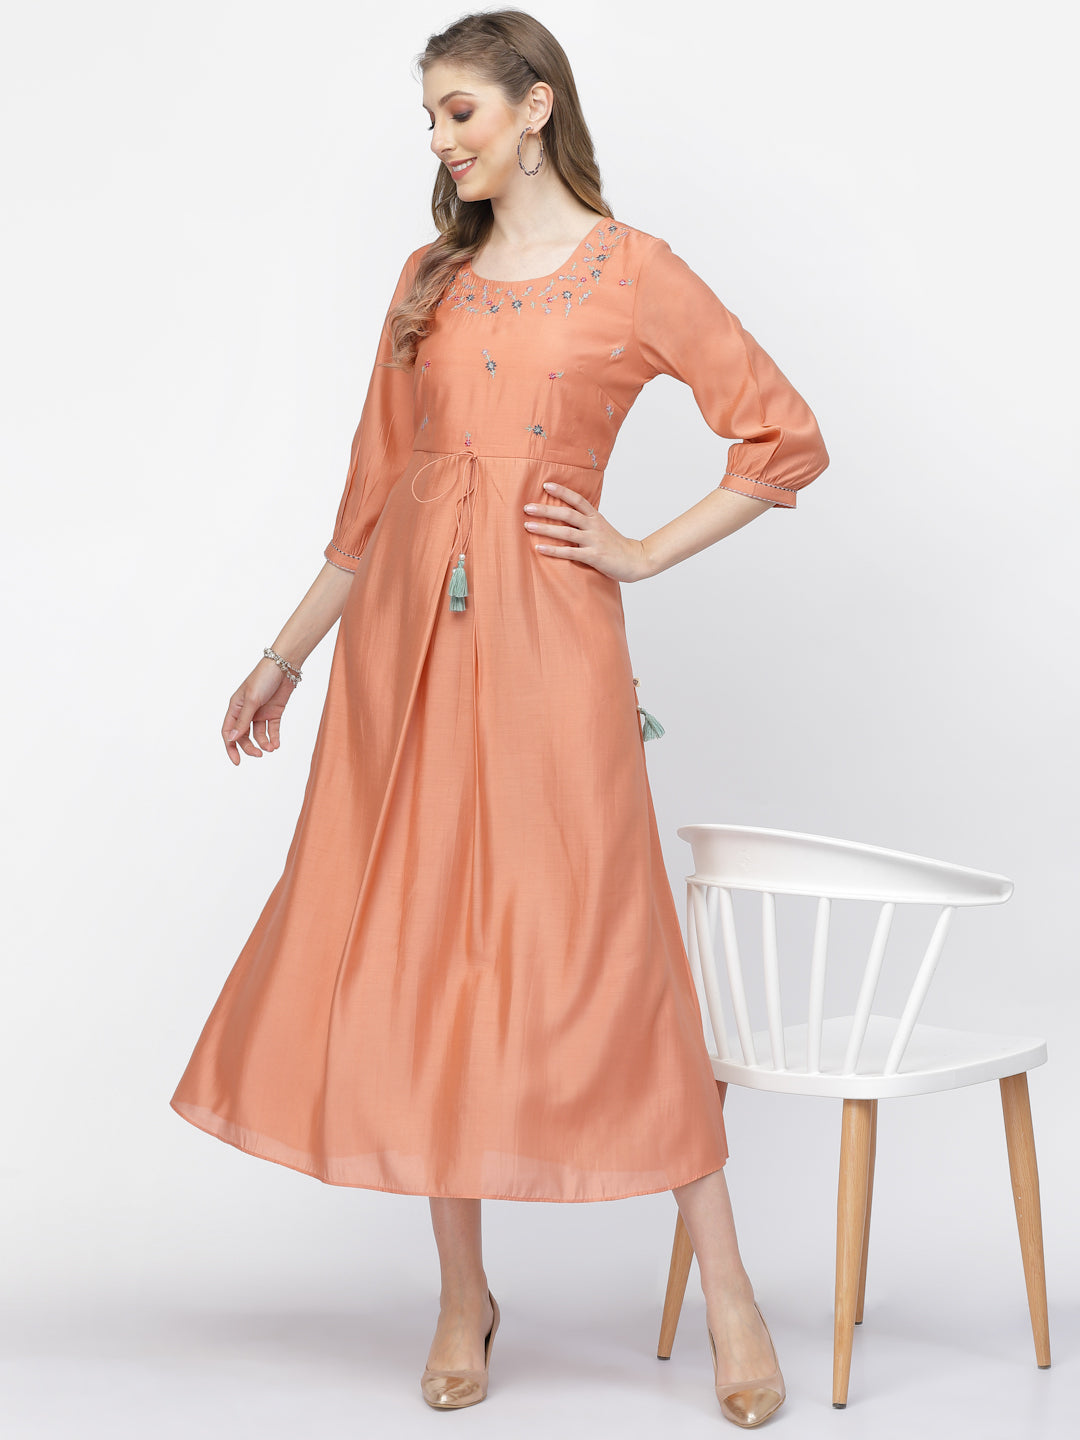 Pale Salmon Chanderi Silk Embroidered Summer Dress - ARH1376